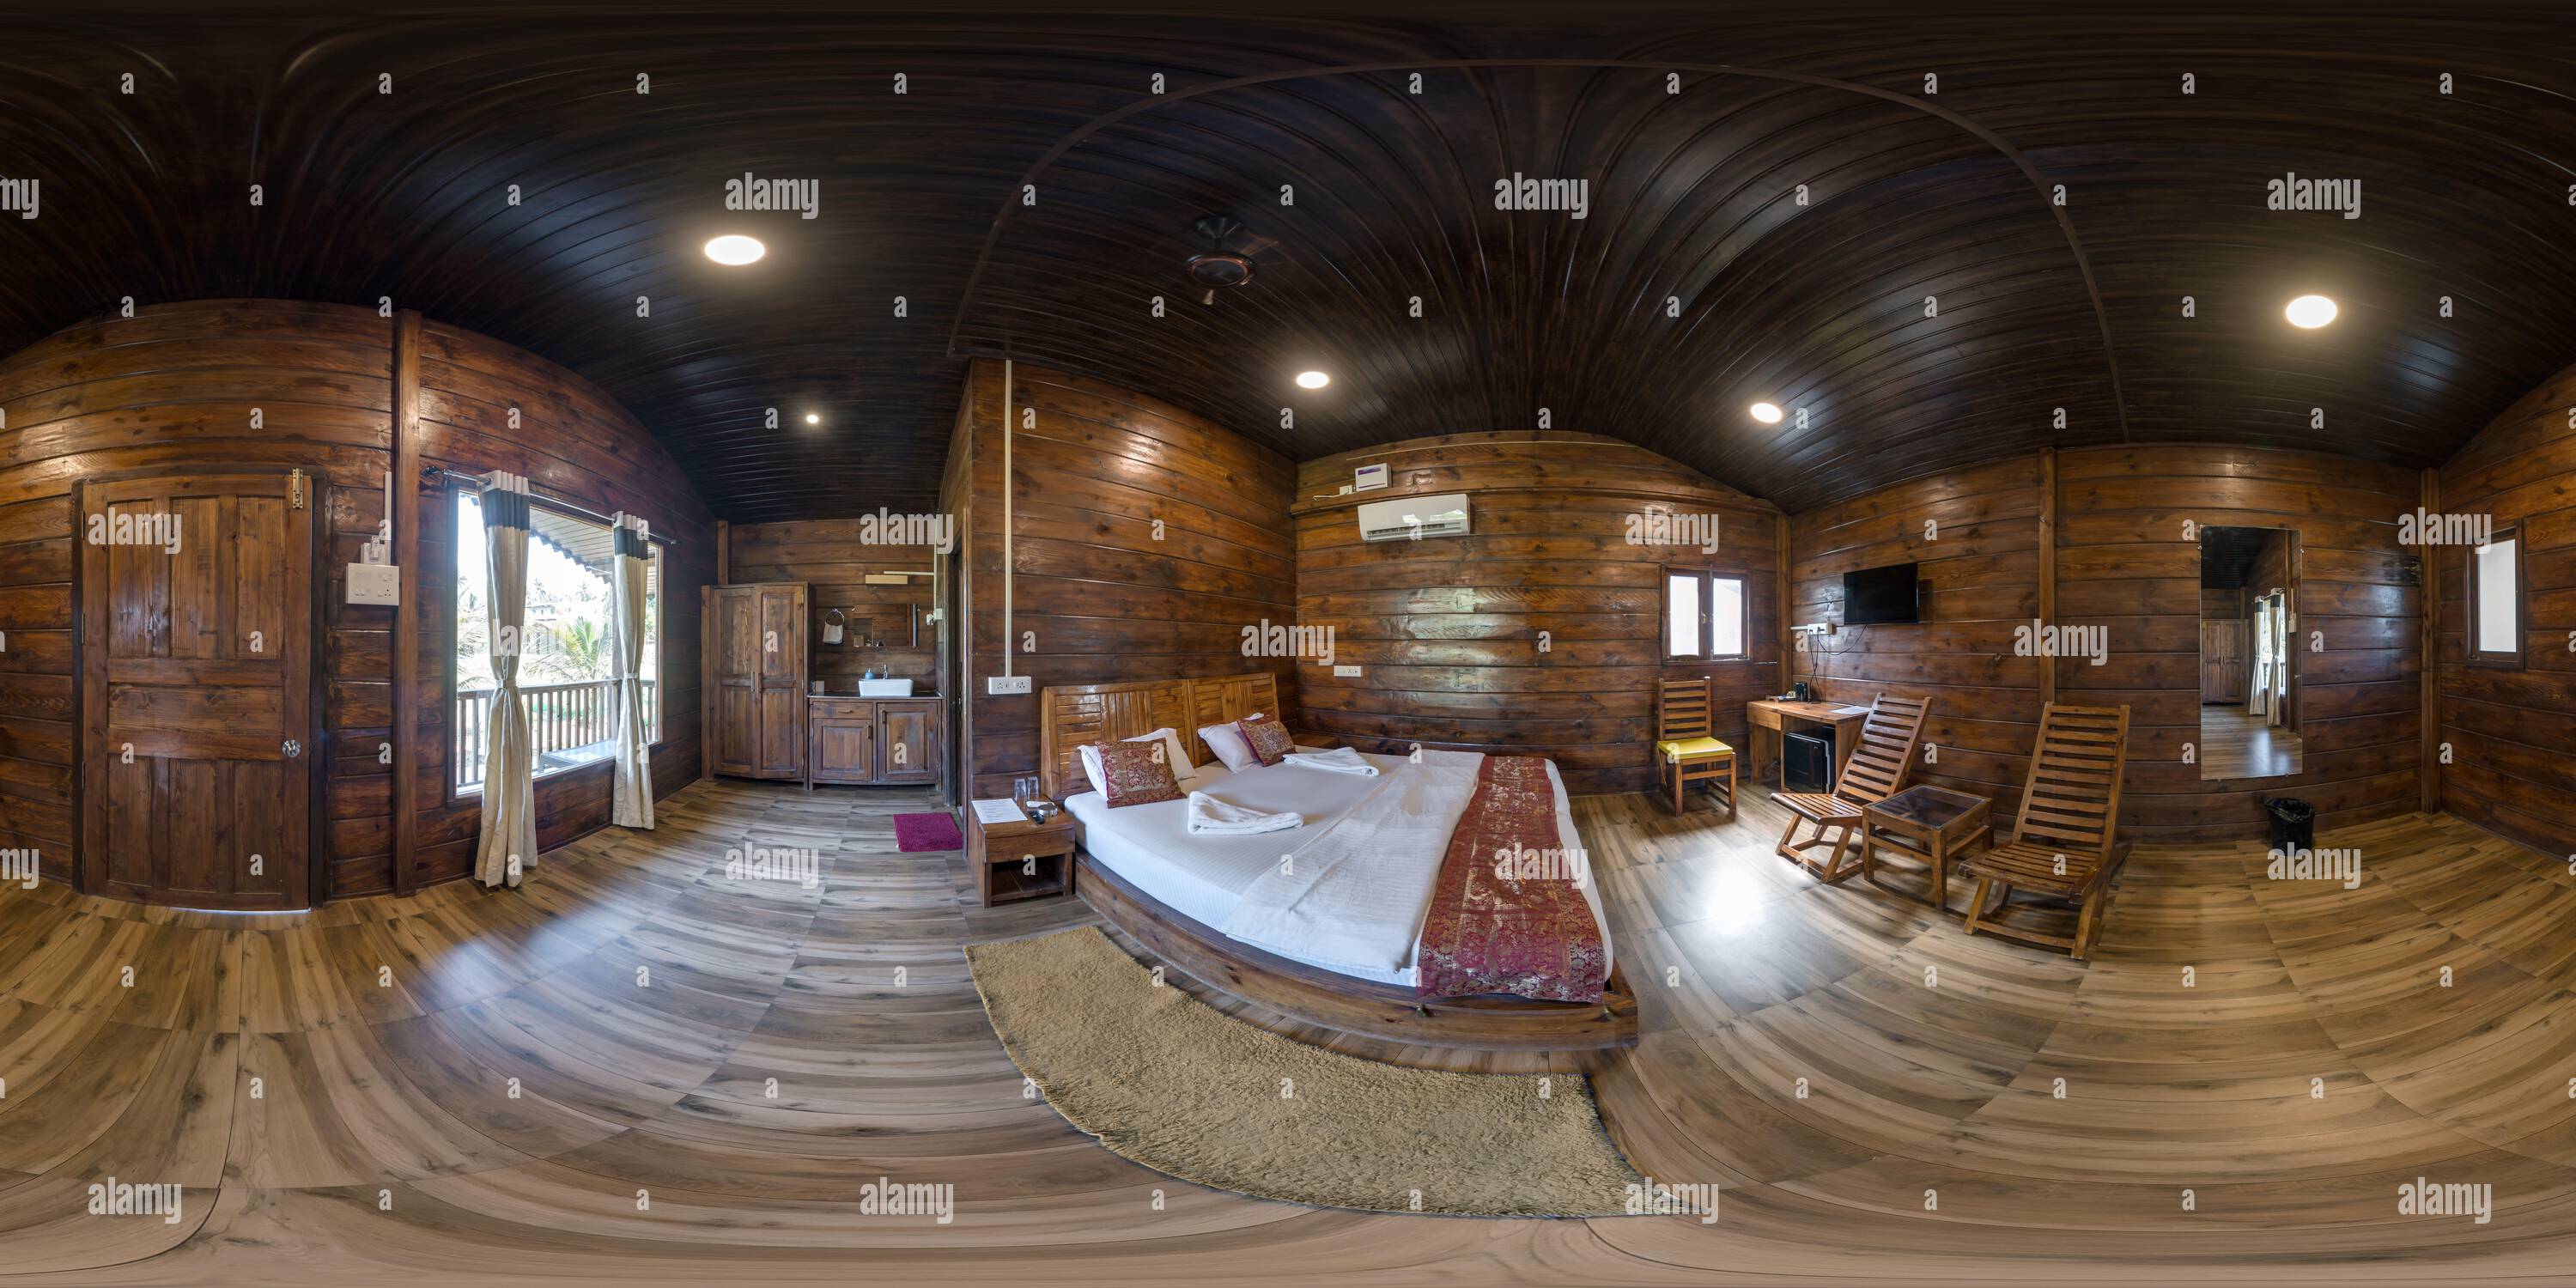 Vue panoramique à 360° de 360 hdri panorama à l'intérieur de la chambre eco en bois dans la propriété de style rustique en projection équirectangulaire avec zénith et nadir. Contenu VR AR,